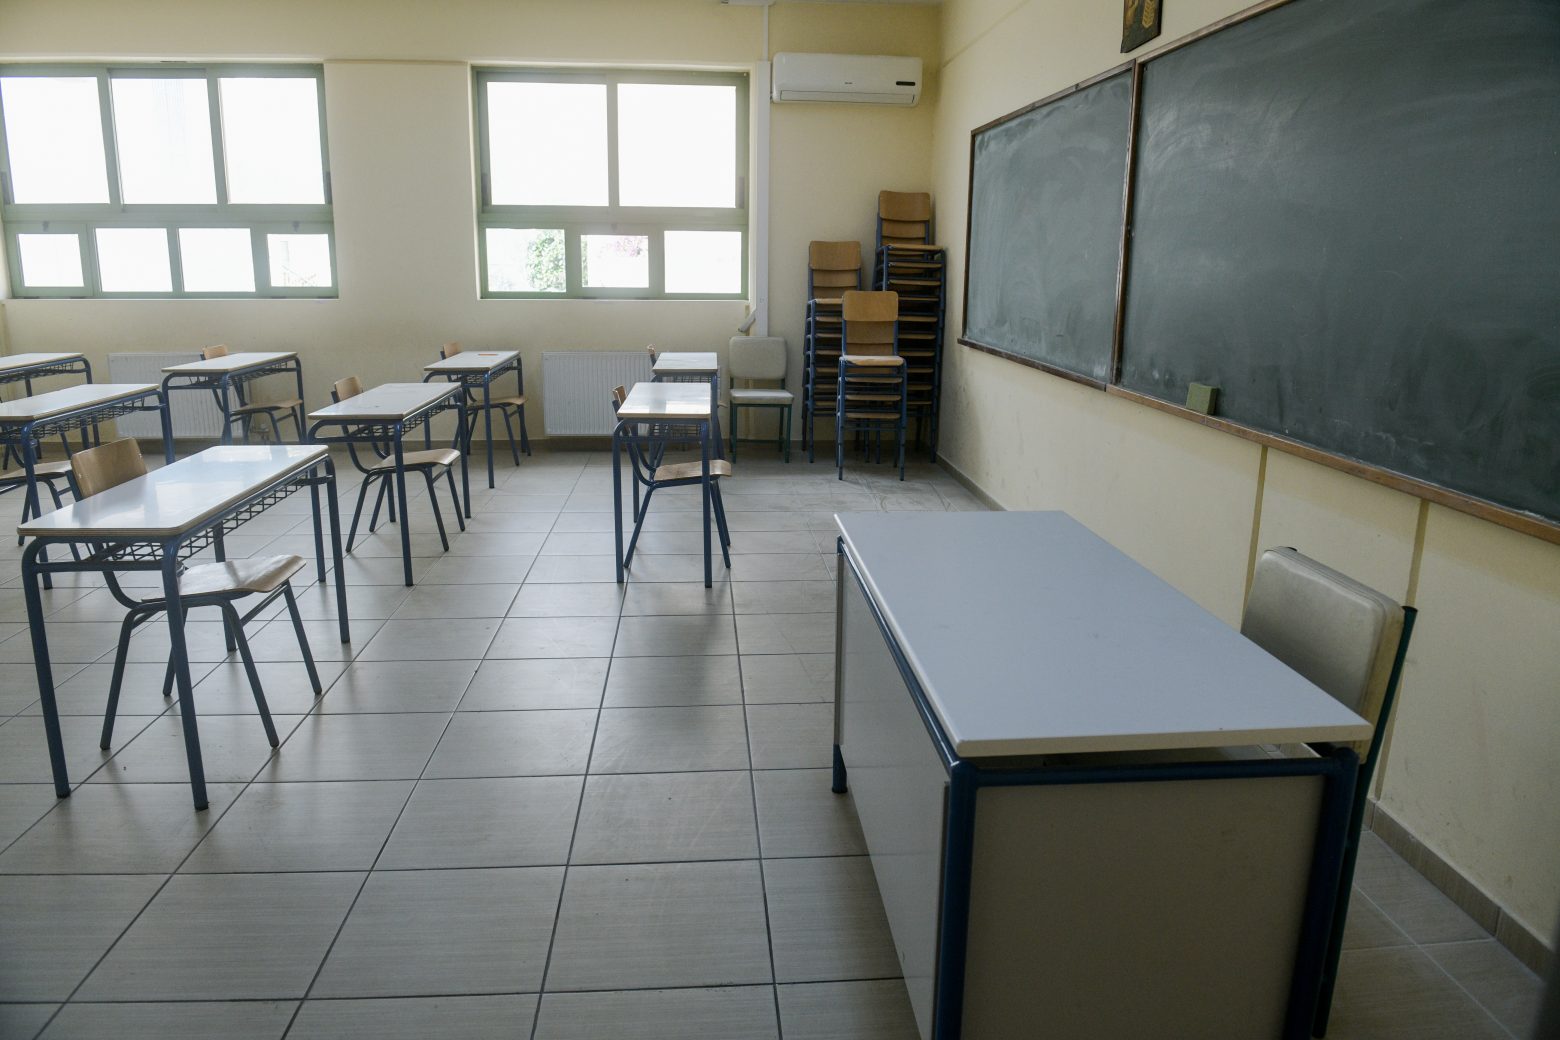 Ειδική προκήρυξη για την κάλυψη κενών στα σχολεία – Ξεκινούν οι αιτήσεις για αναπληρωτές